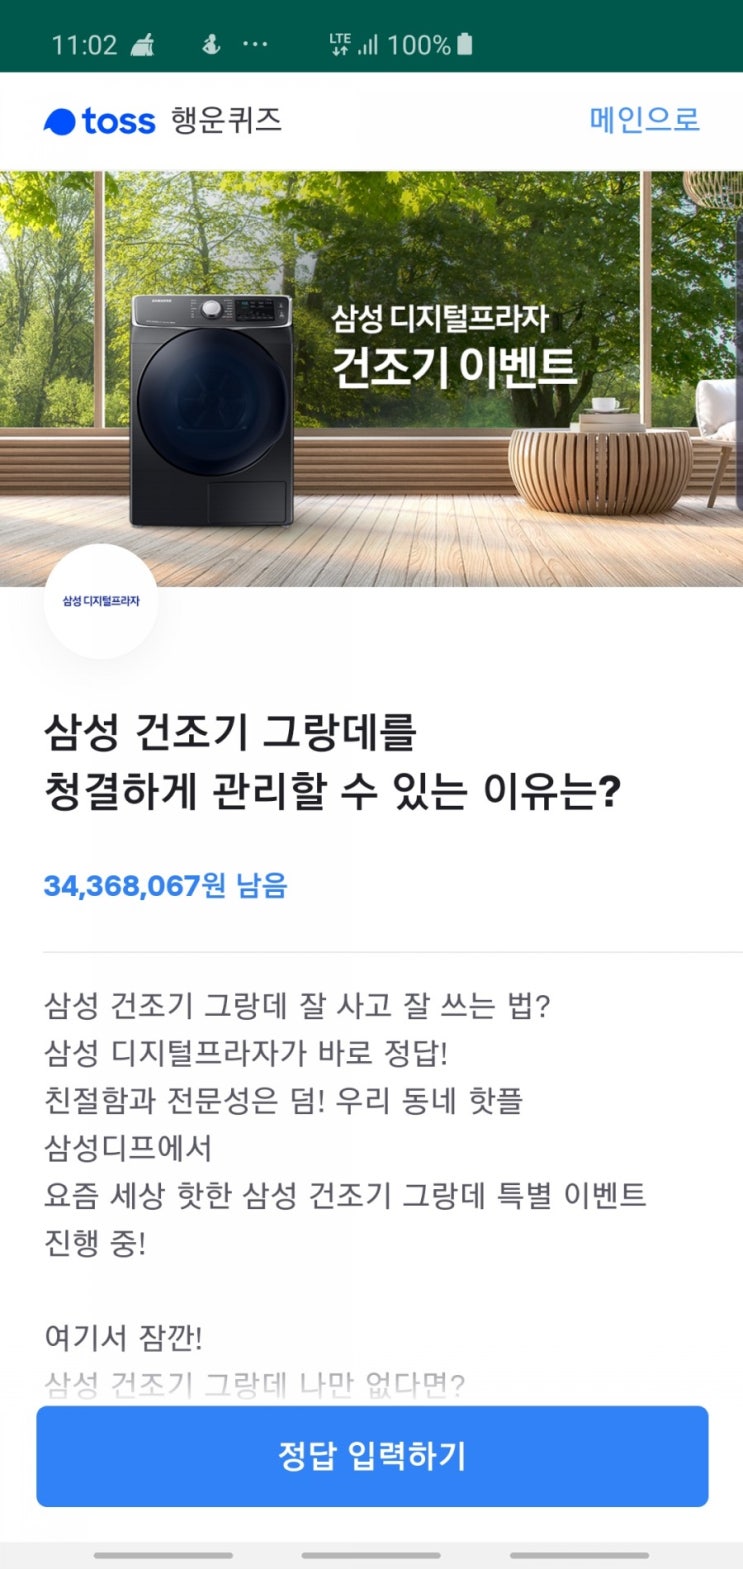 삼성 디지털프라자 건조기 이벤트 토스행운퀴즈 정답 공개(실시간)